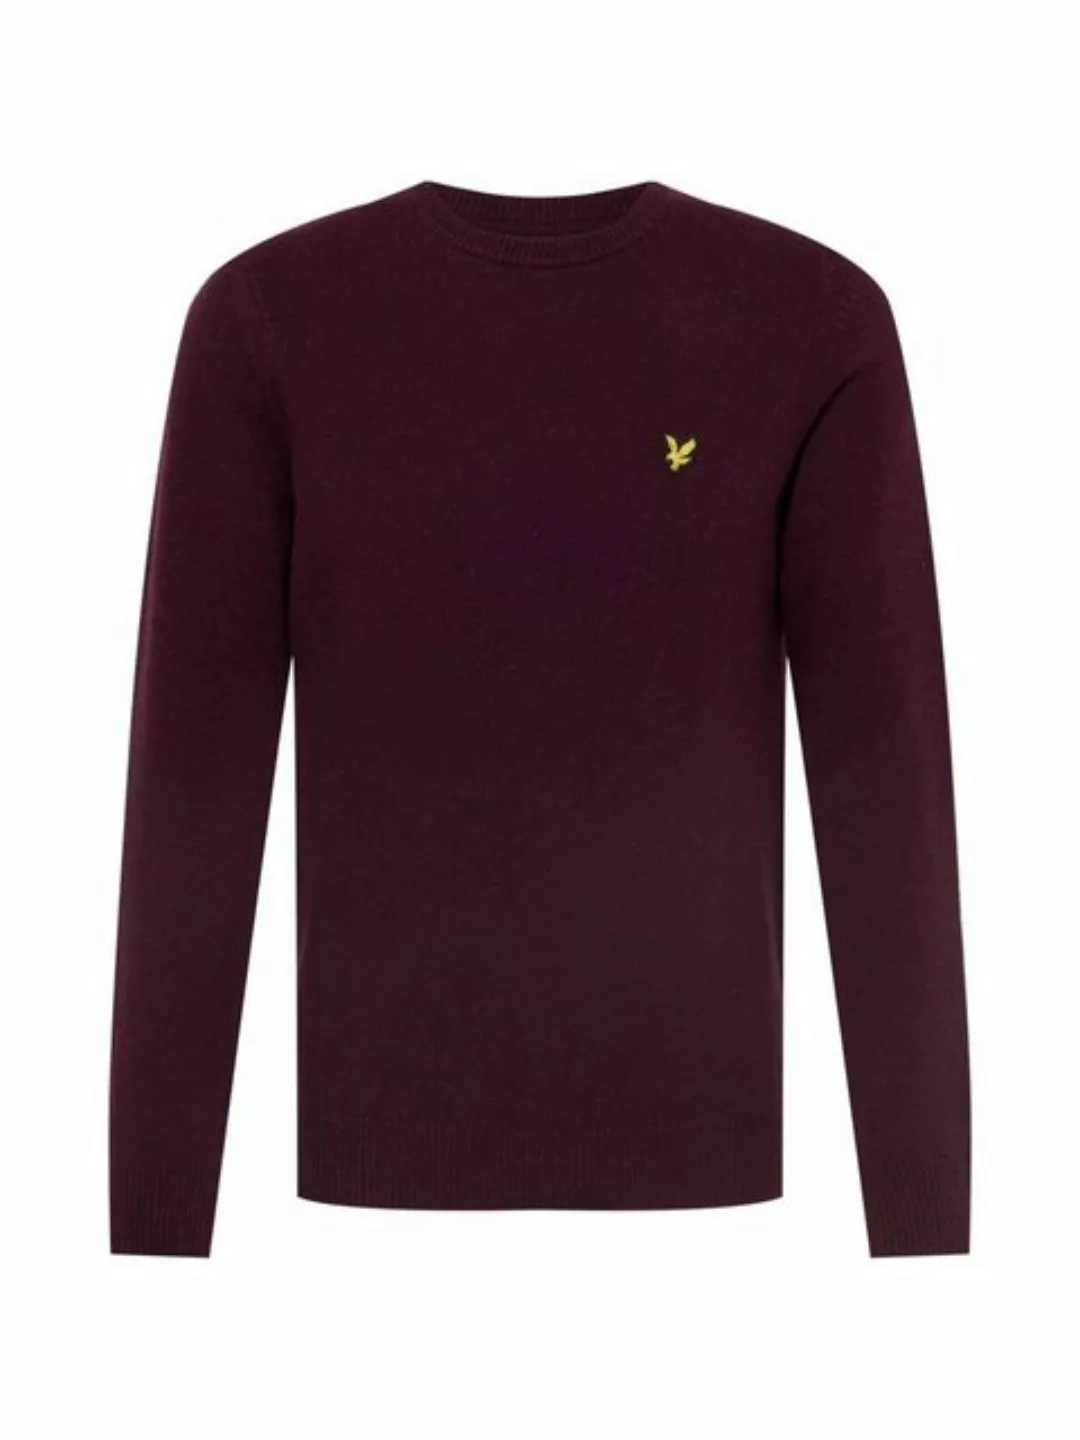 lyle & scott vintage Sweatshirt Herren Bordeaux lana günstig online kaufen